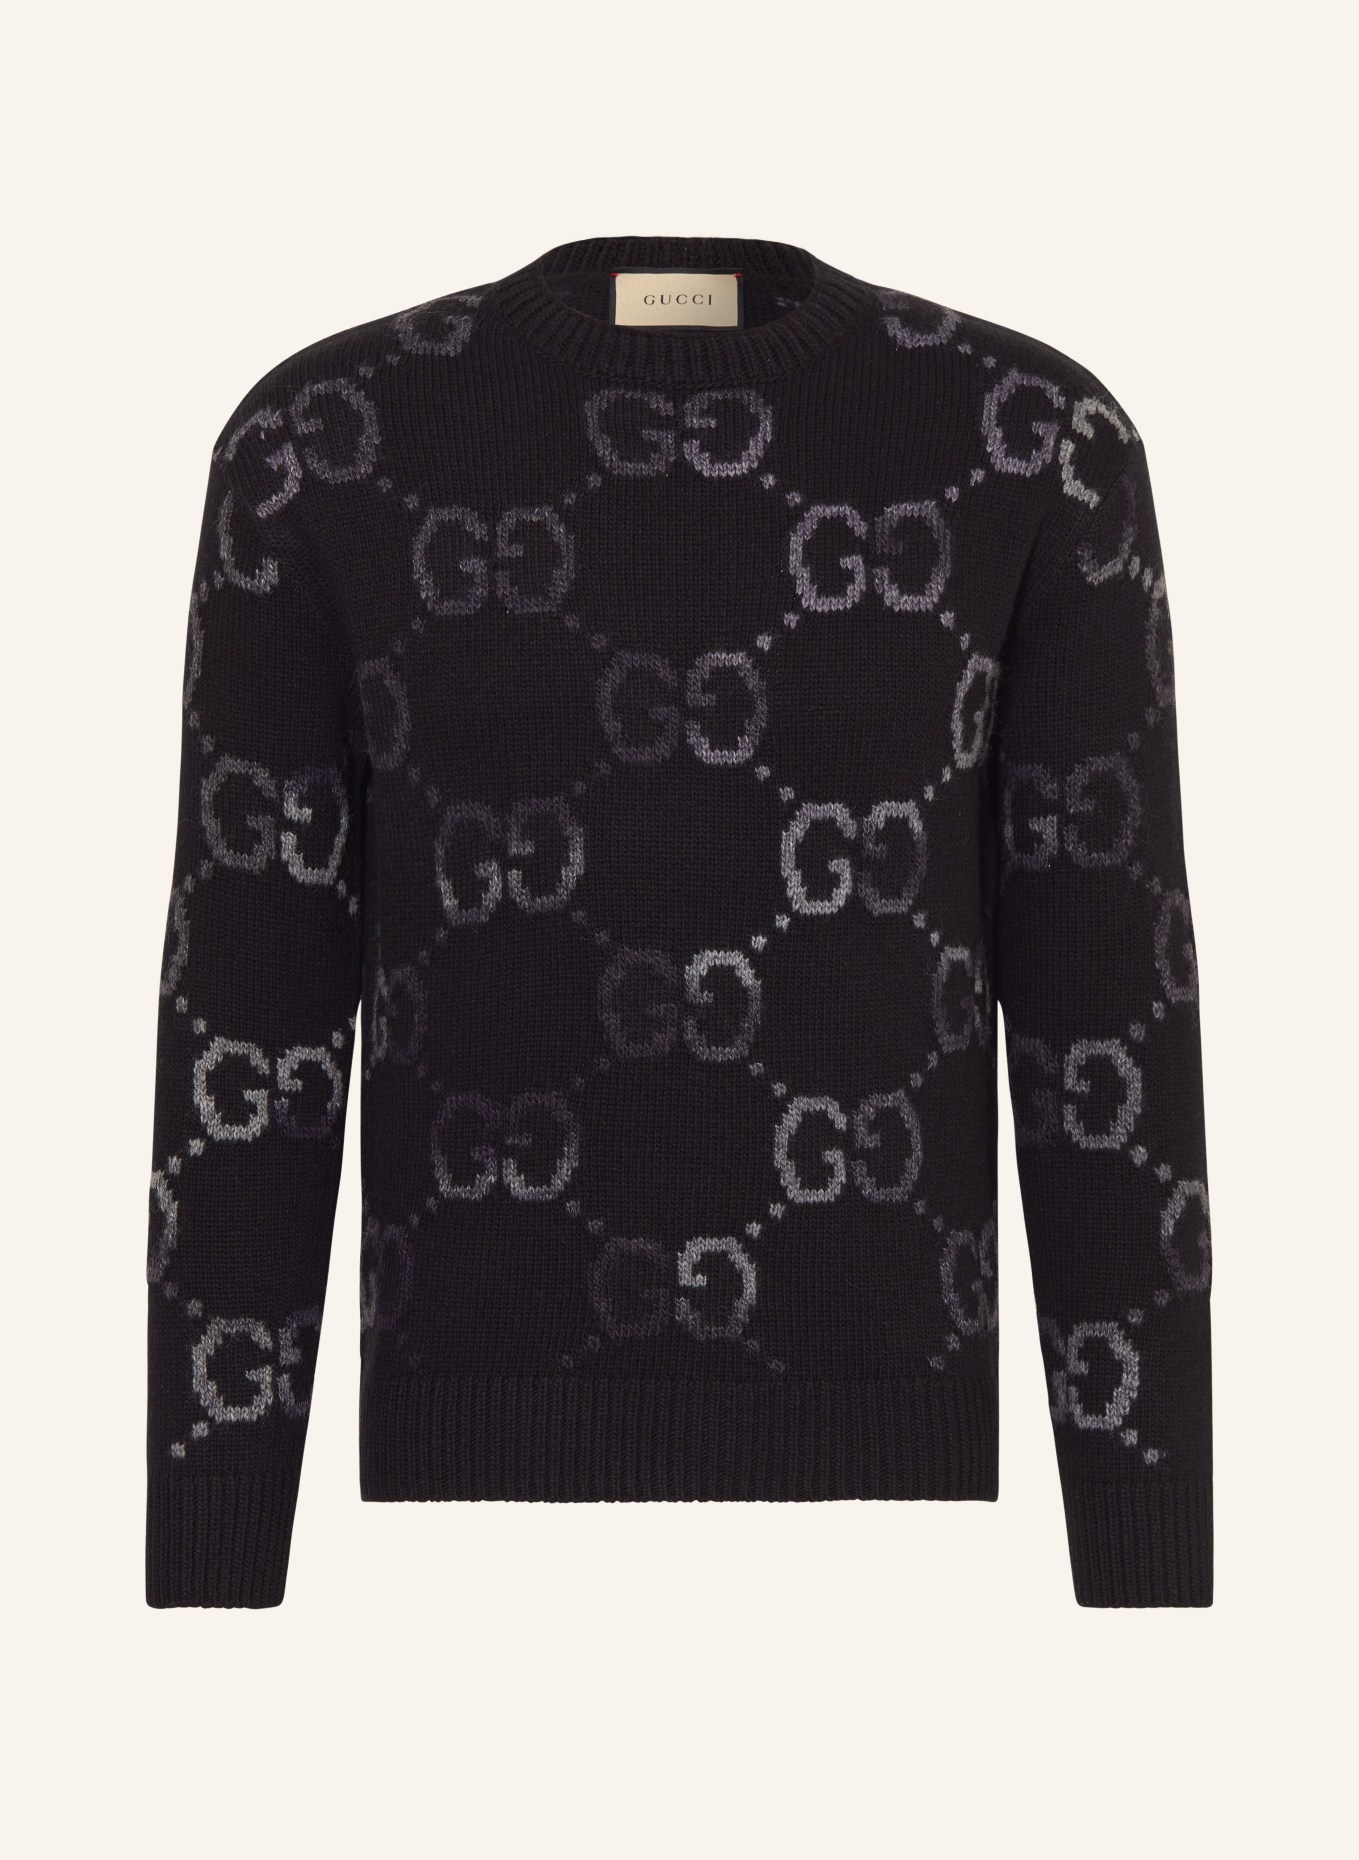 GUCCI Sweater, Color: BLACK/ DARK GRAY (Image 1)